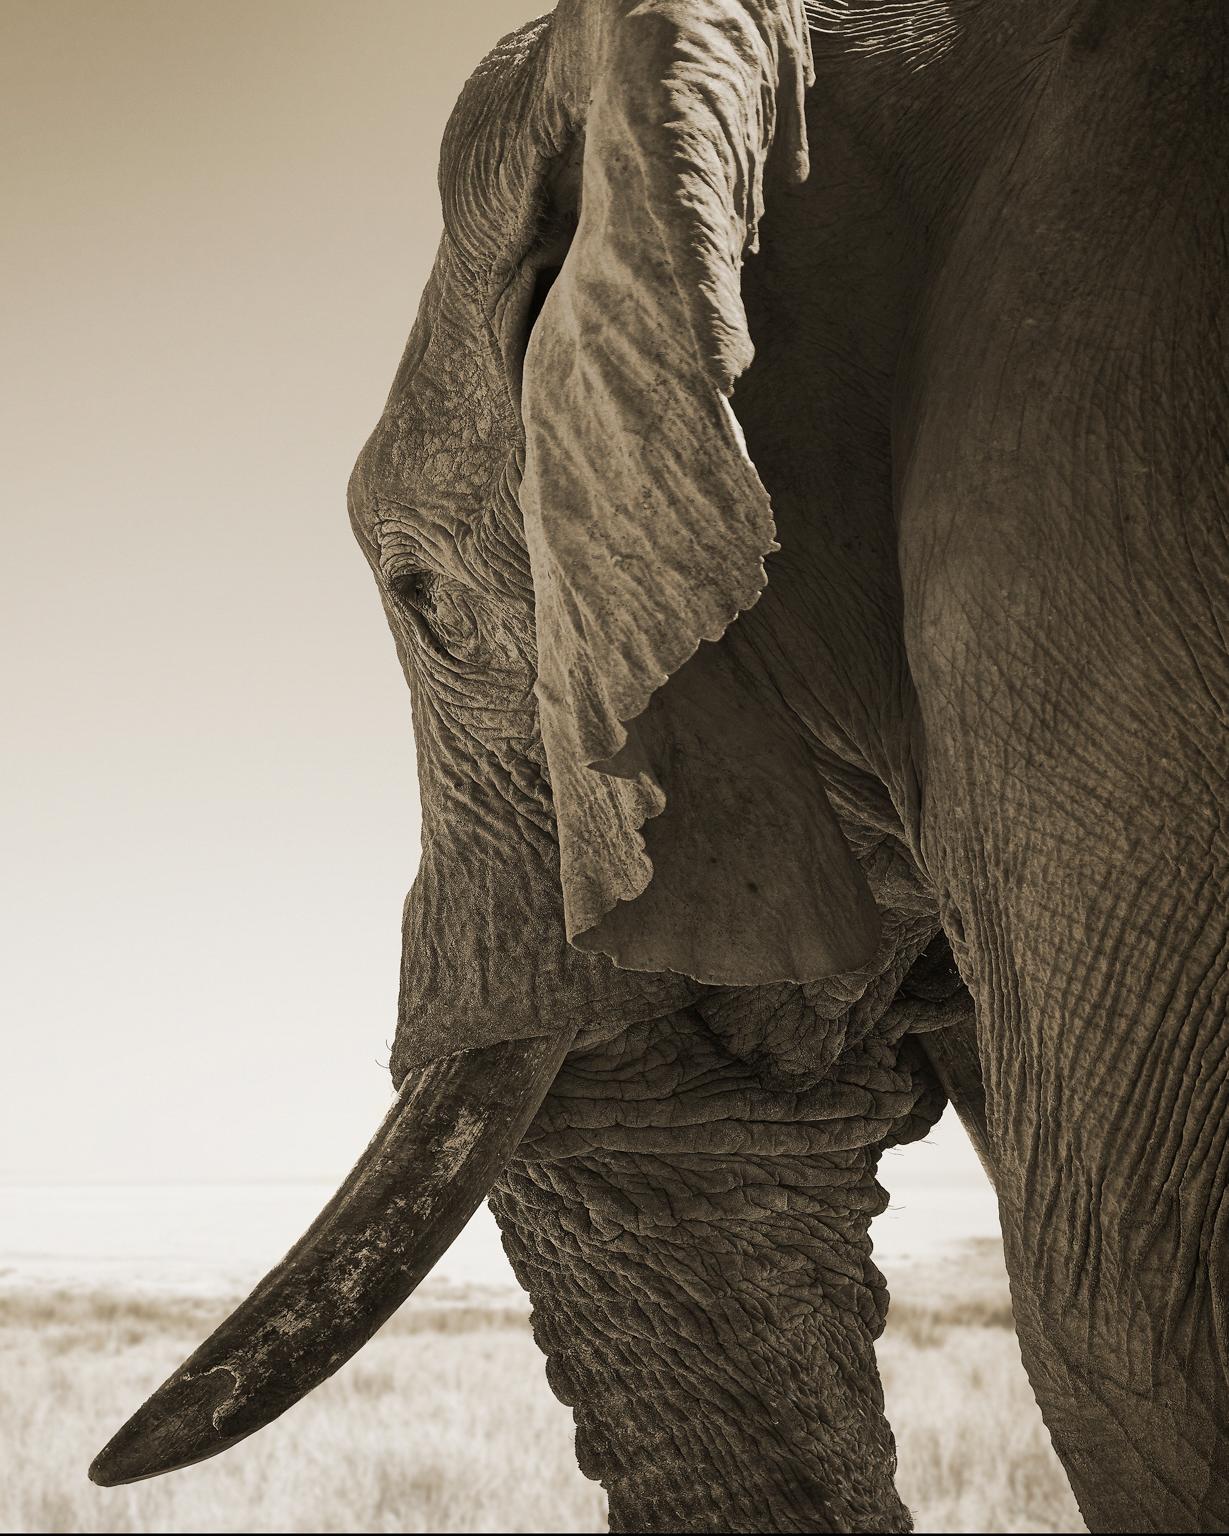 Elefant-02, Namibia (Schwarz), Portrait Photograph, von Chris Gordaneer